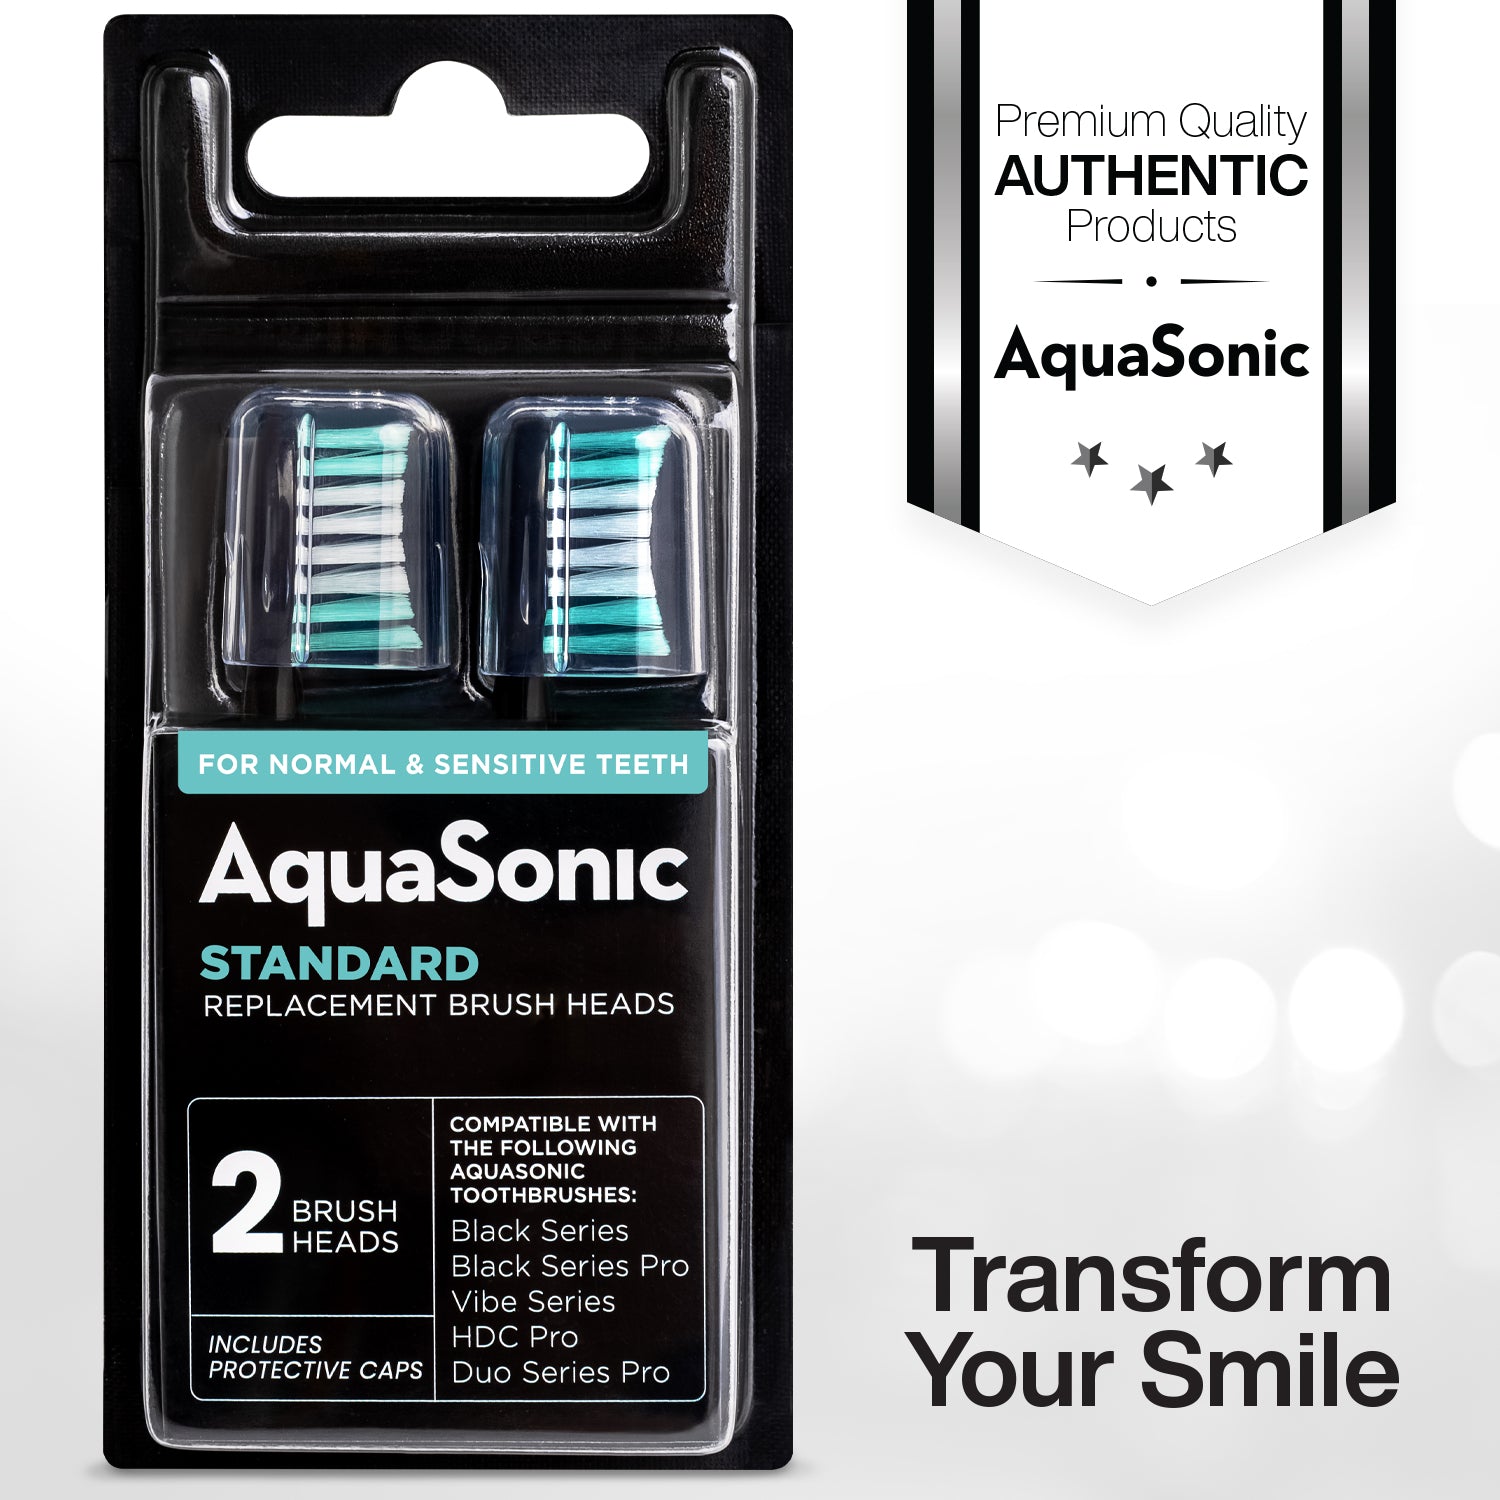 DUO SERIES Replacement Brush Heads – AquaSonic